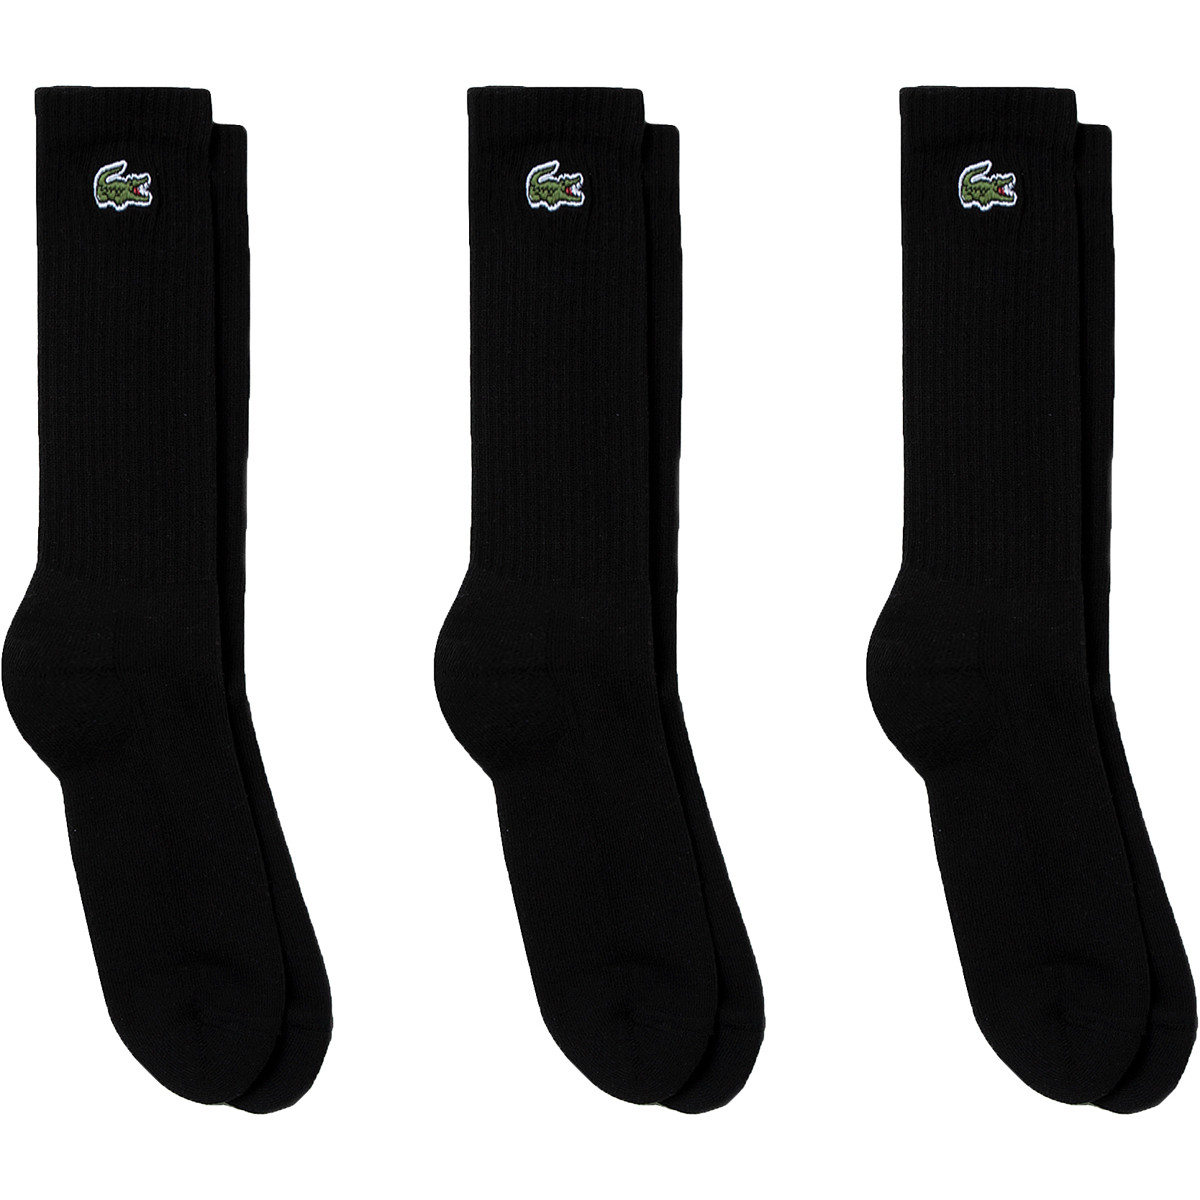 Chaussettes de tennis Lacoste homme - Coloris noir - Pack de 3 paires